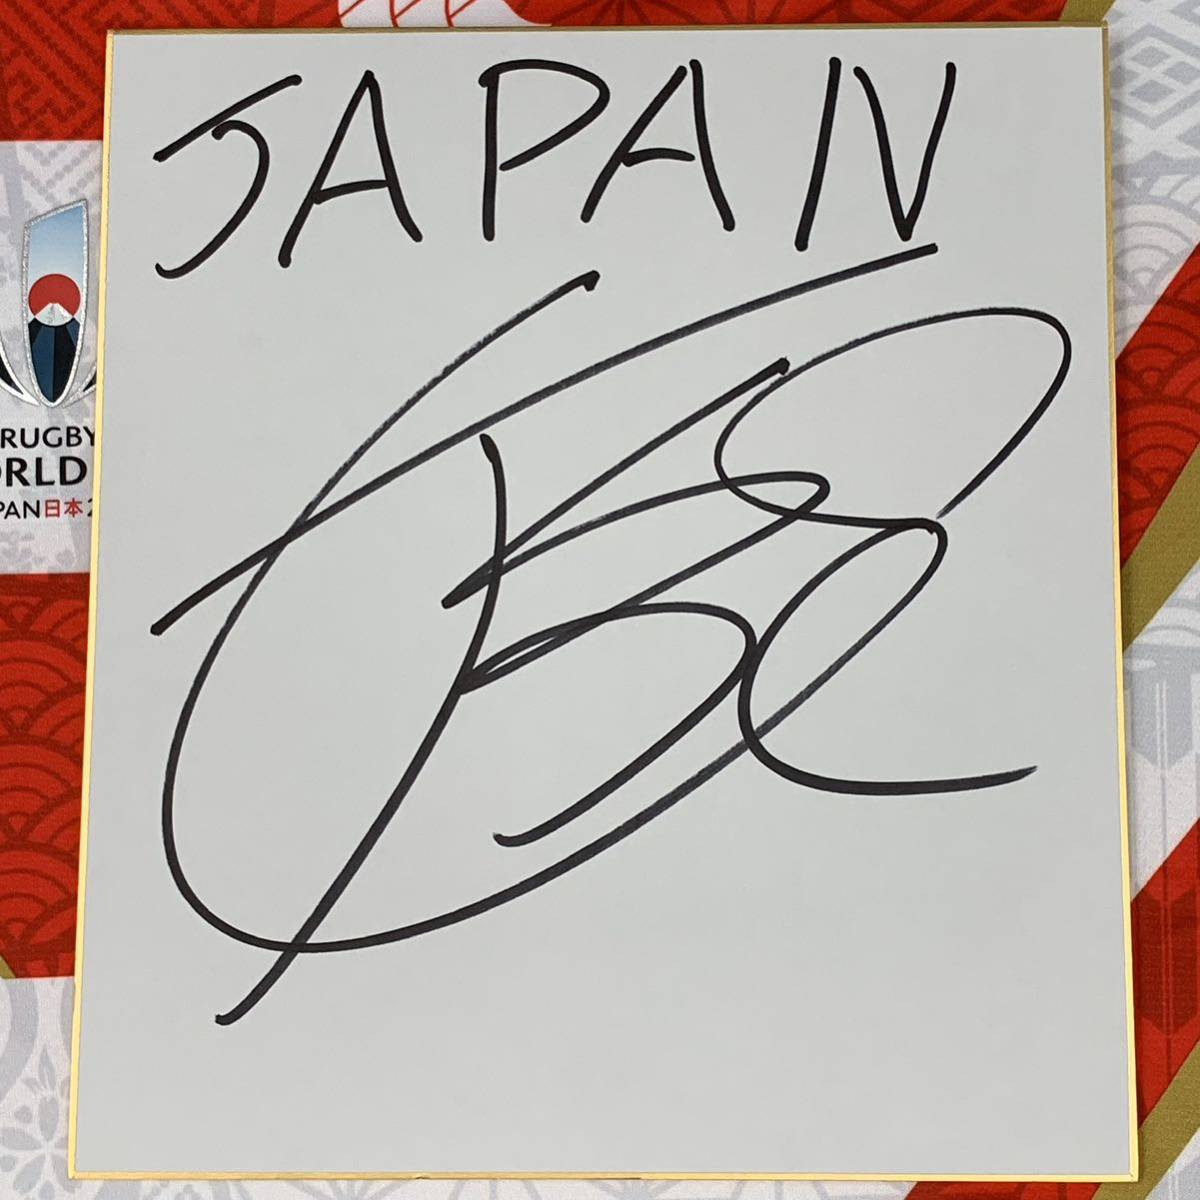 新作モデル ラグビーワールドカップ2019日本代表 姫野和樹選手のサイン